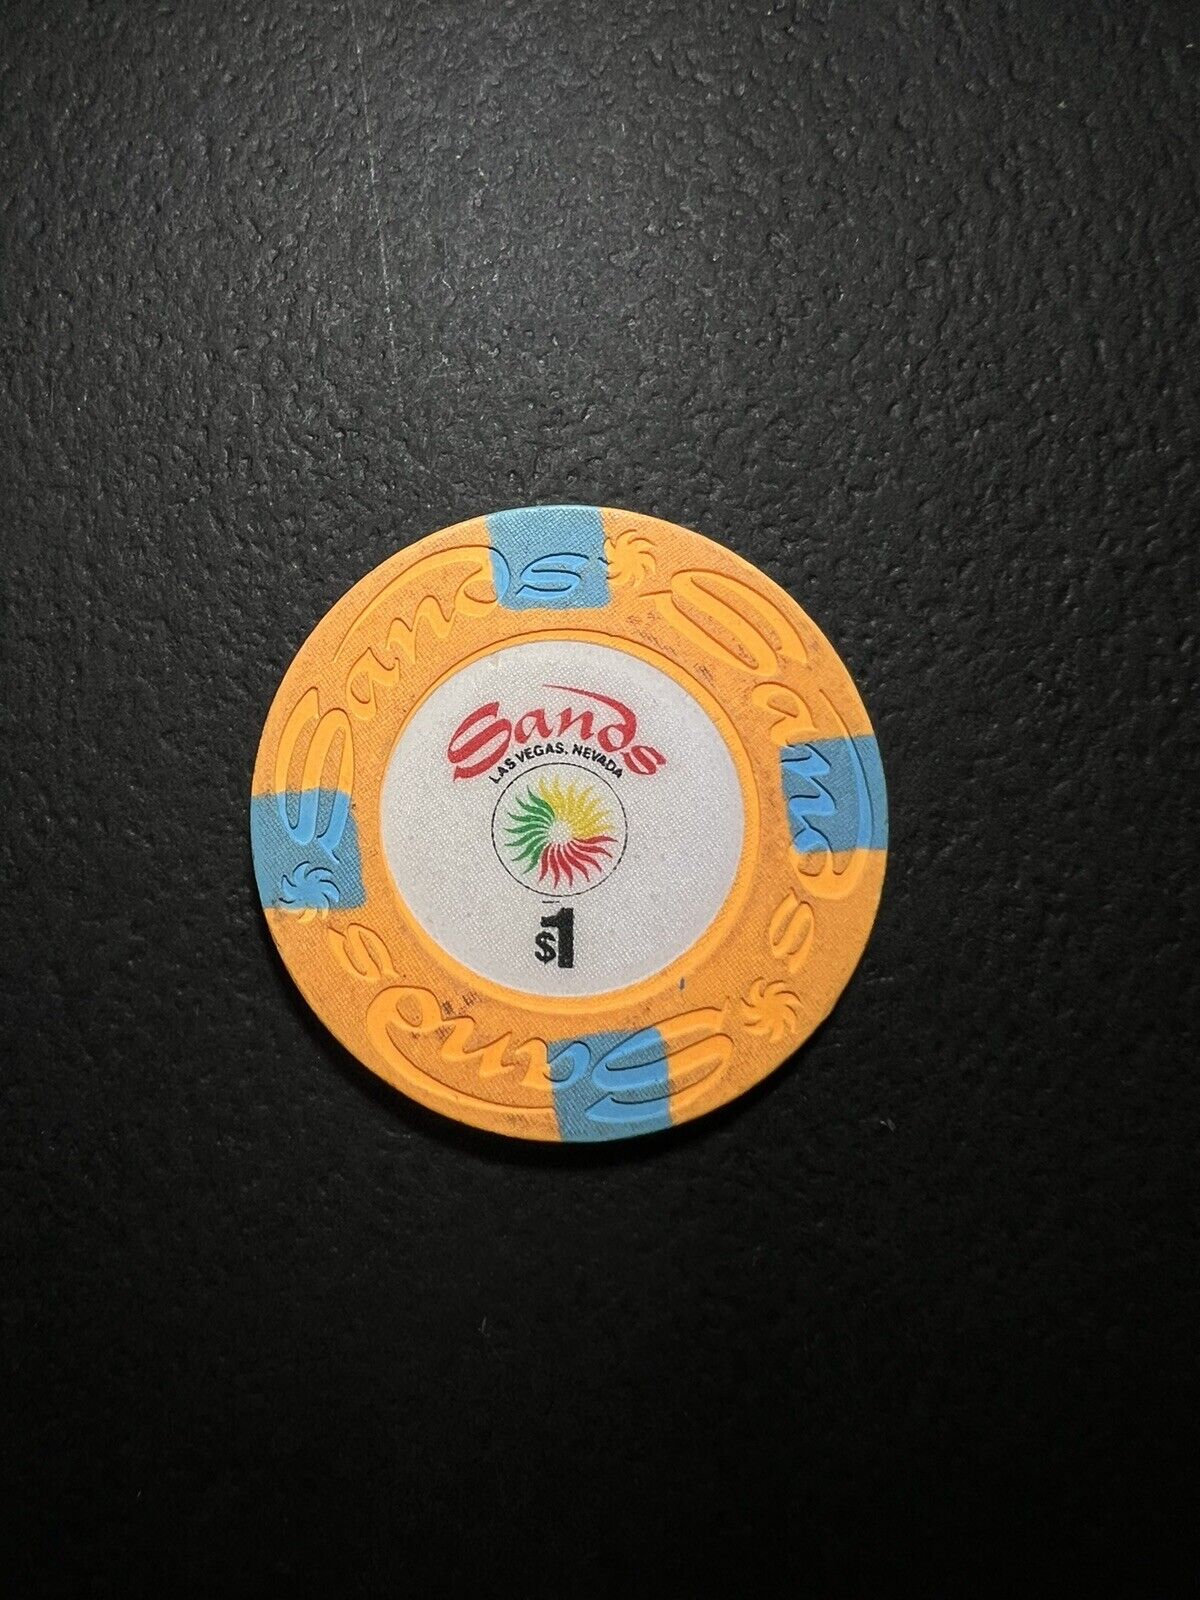 $1 Las Vegas Sands Casino Chip - Orange - Very Nice Nevada Gaming History